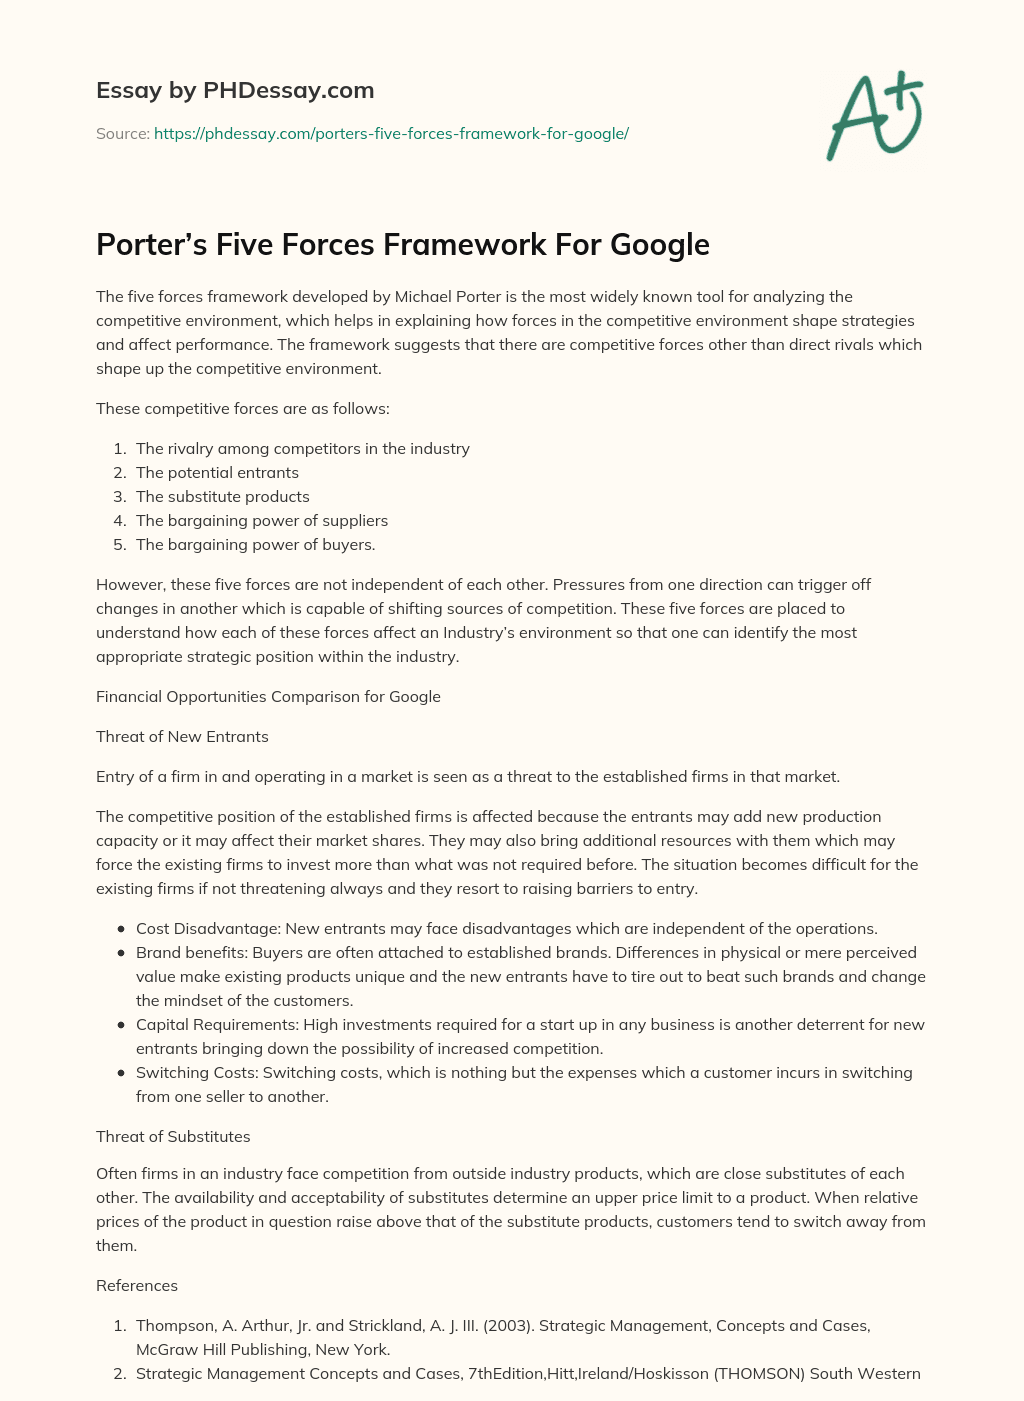 Porter’s Five Forces Framework For Google essay